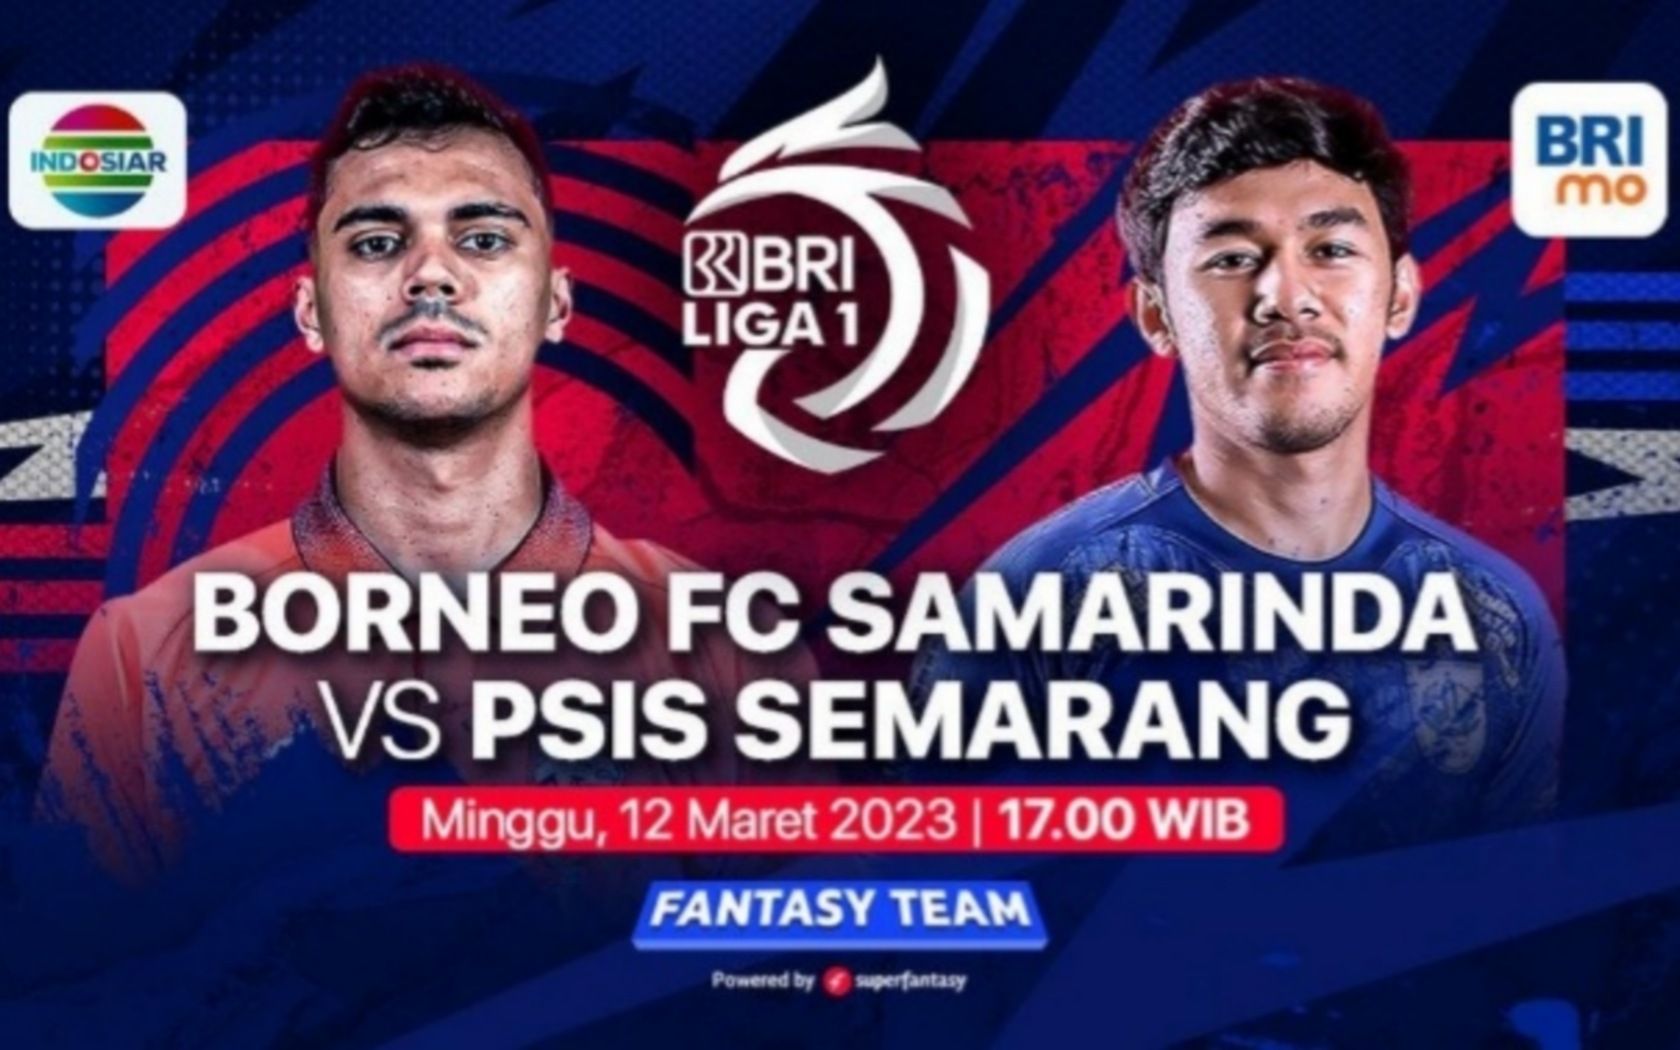 Prediksi formasi susunan pemain Borneo FC vs PSIS Semarang pertandingan BRI Liga 1 hari ini